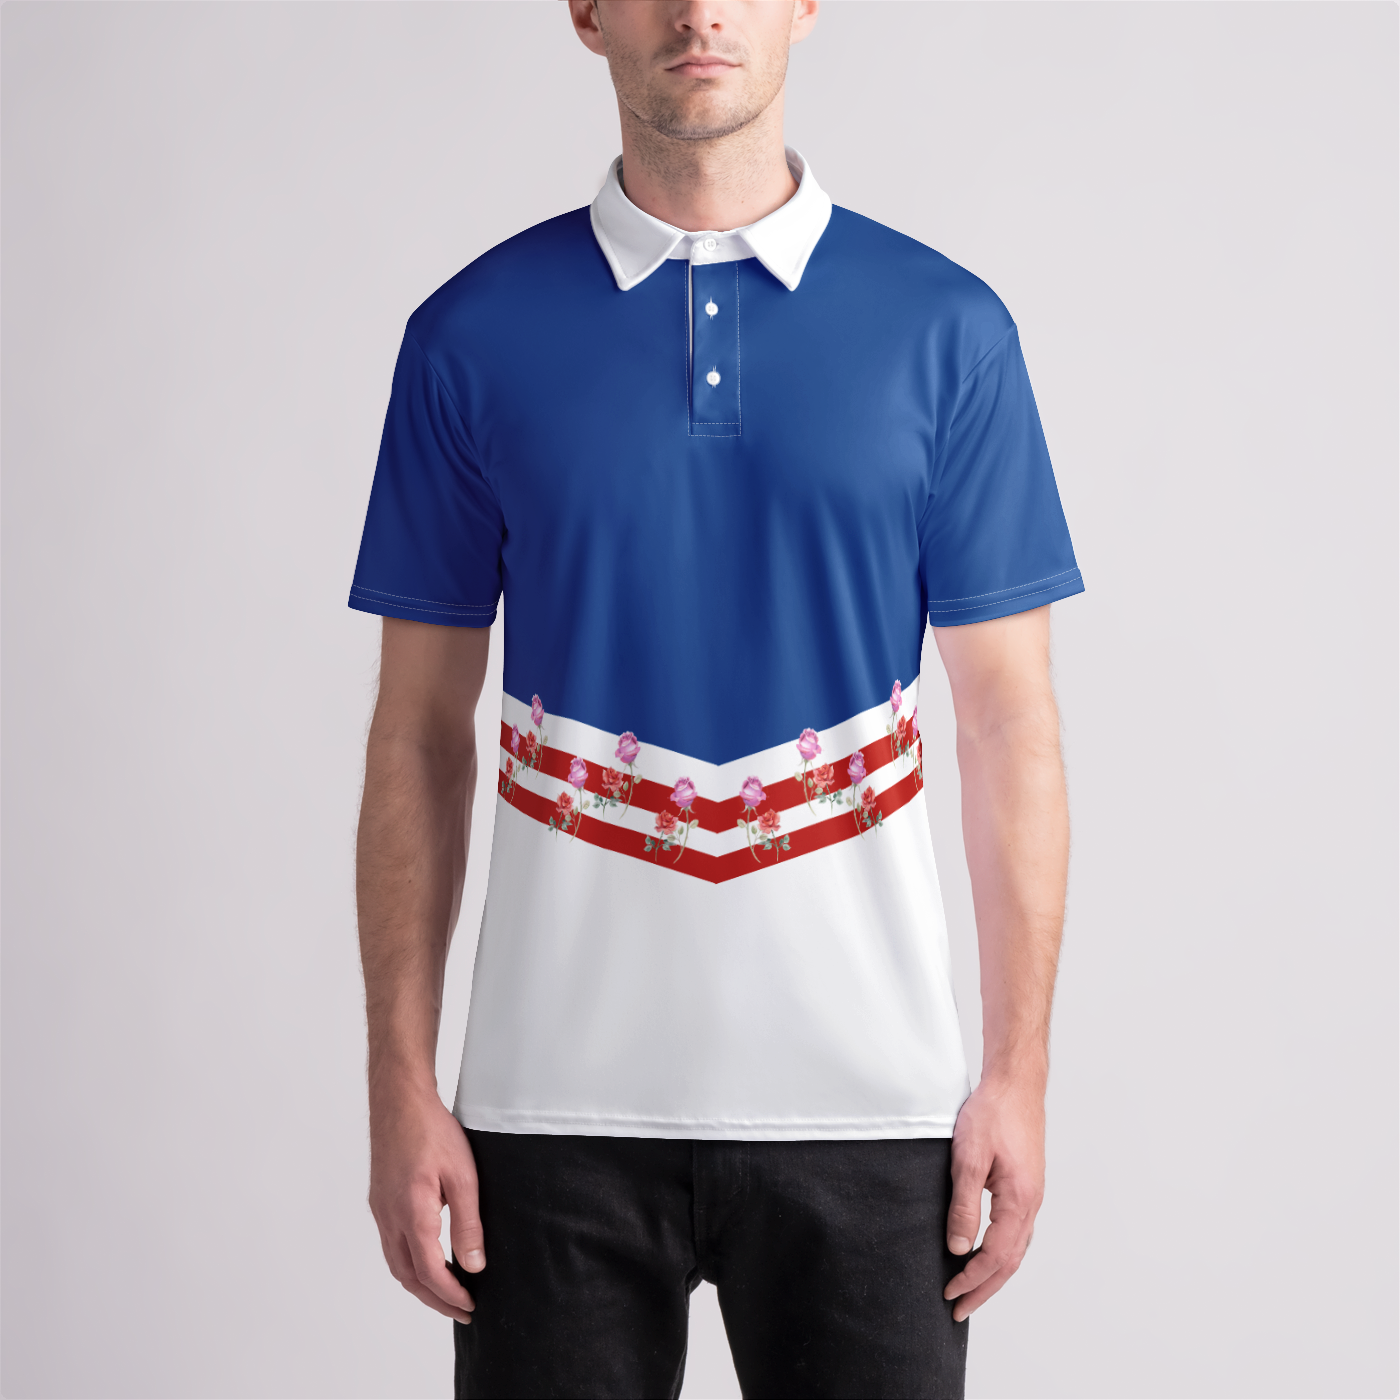 American Flower Golf Shirt